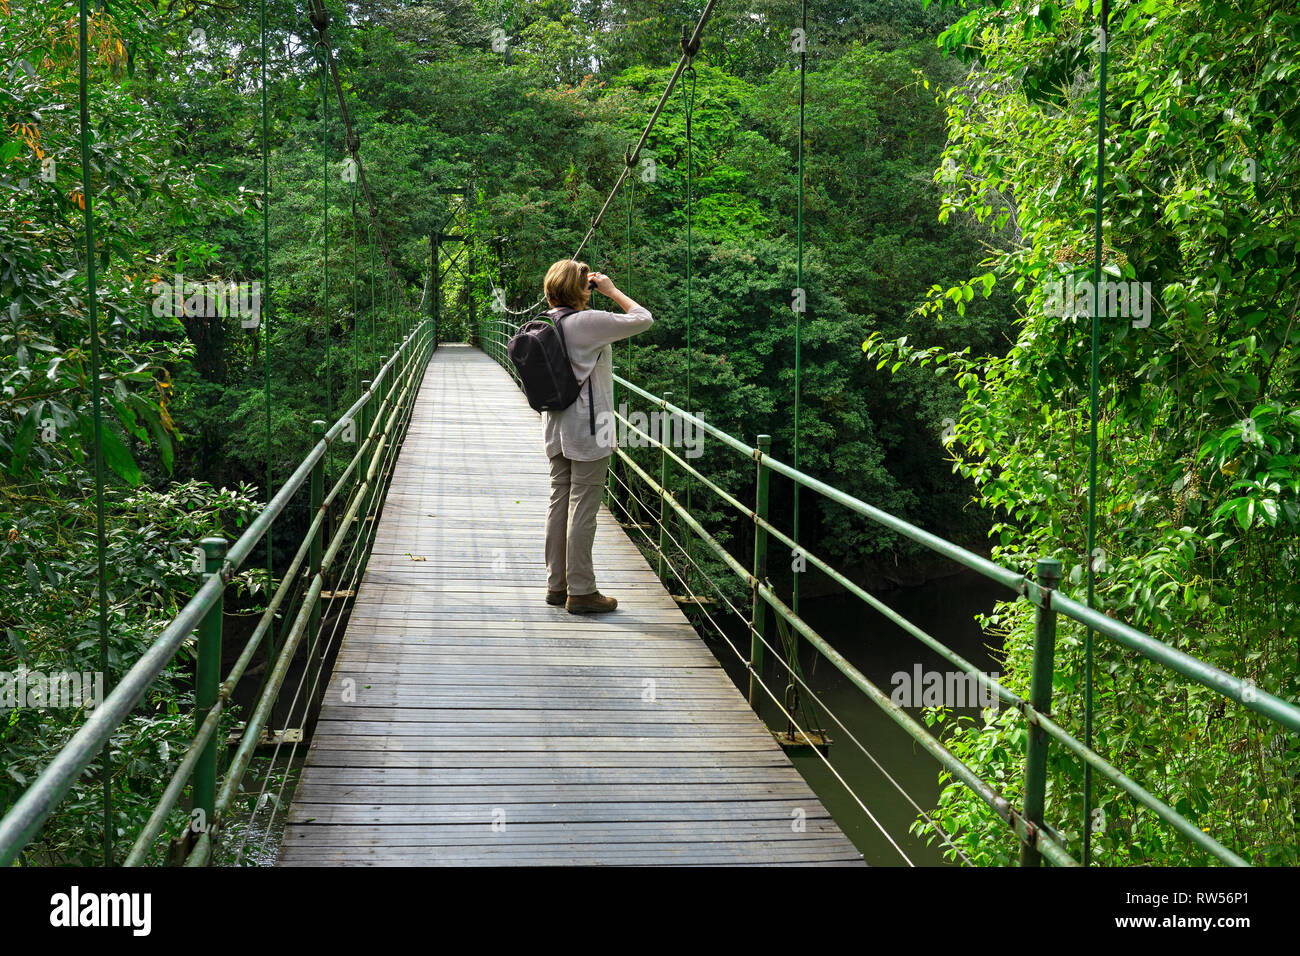 Turista sobre puente colgante en la seva Estación Biológica,Bosque Tropical,Sarapiquí, en Costa Rica, Centroamérica Foto de stock